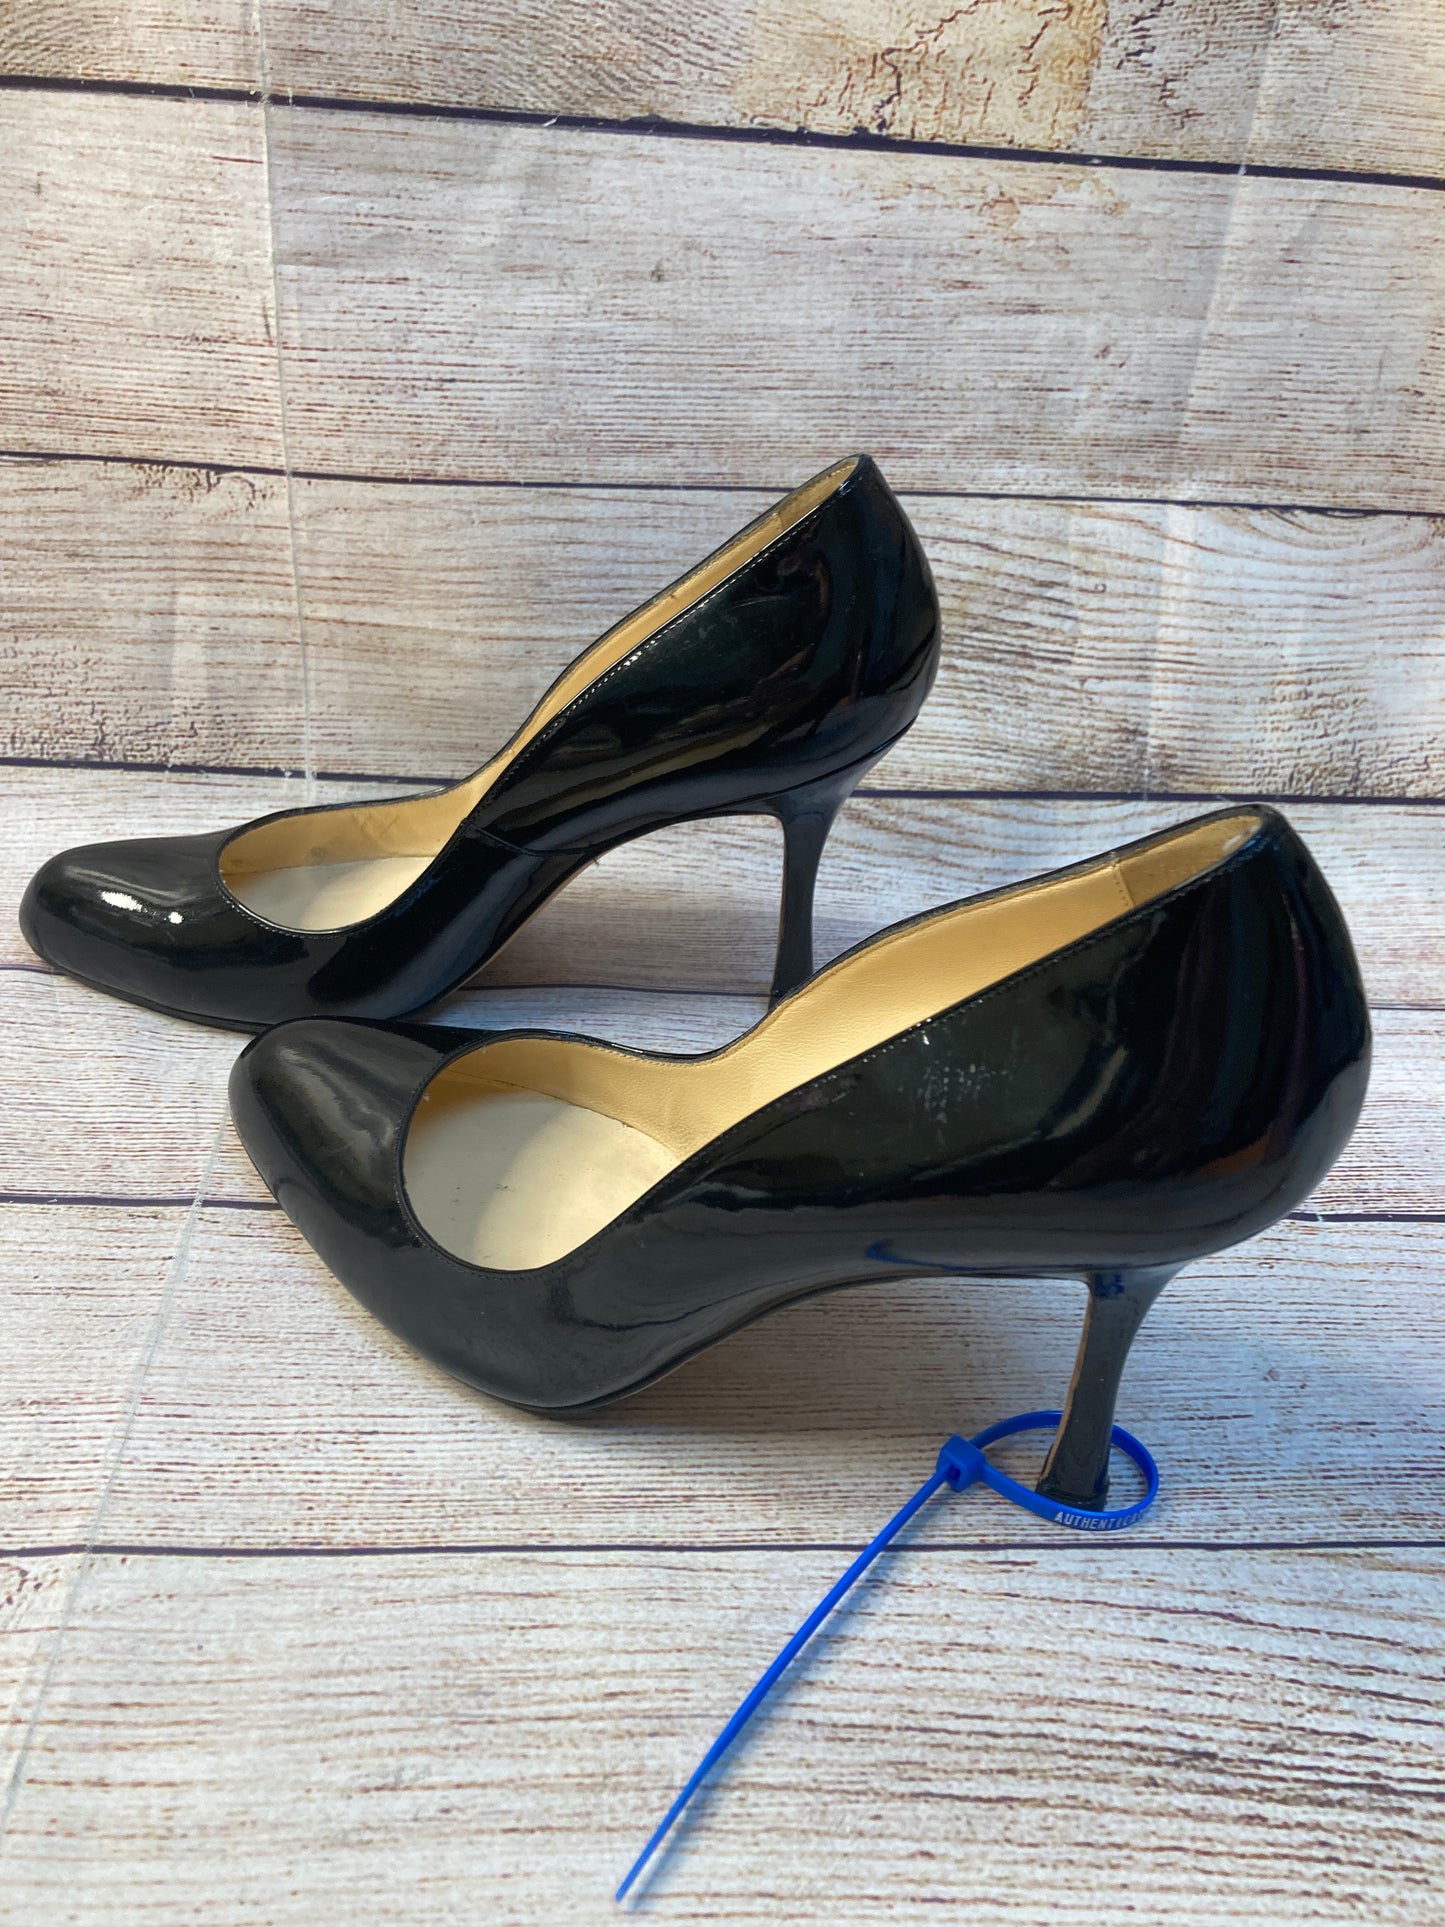 Shoes Heels Stiletto By Manolo Blahnik  Size: 7.5